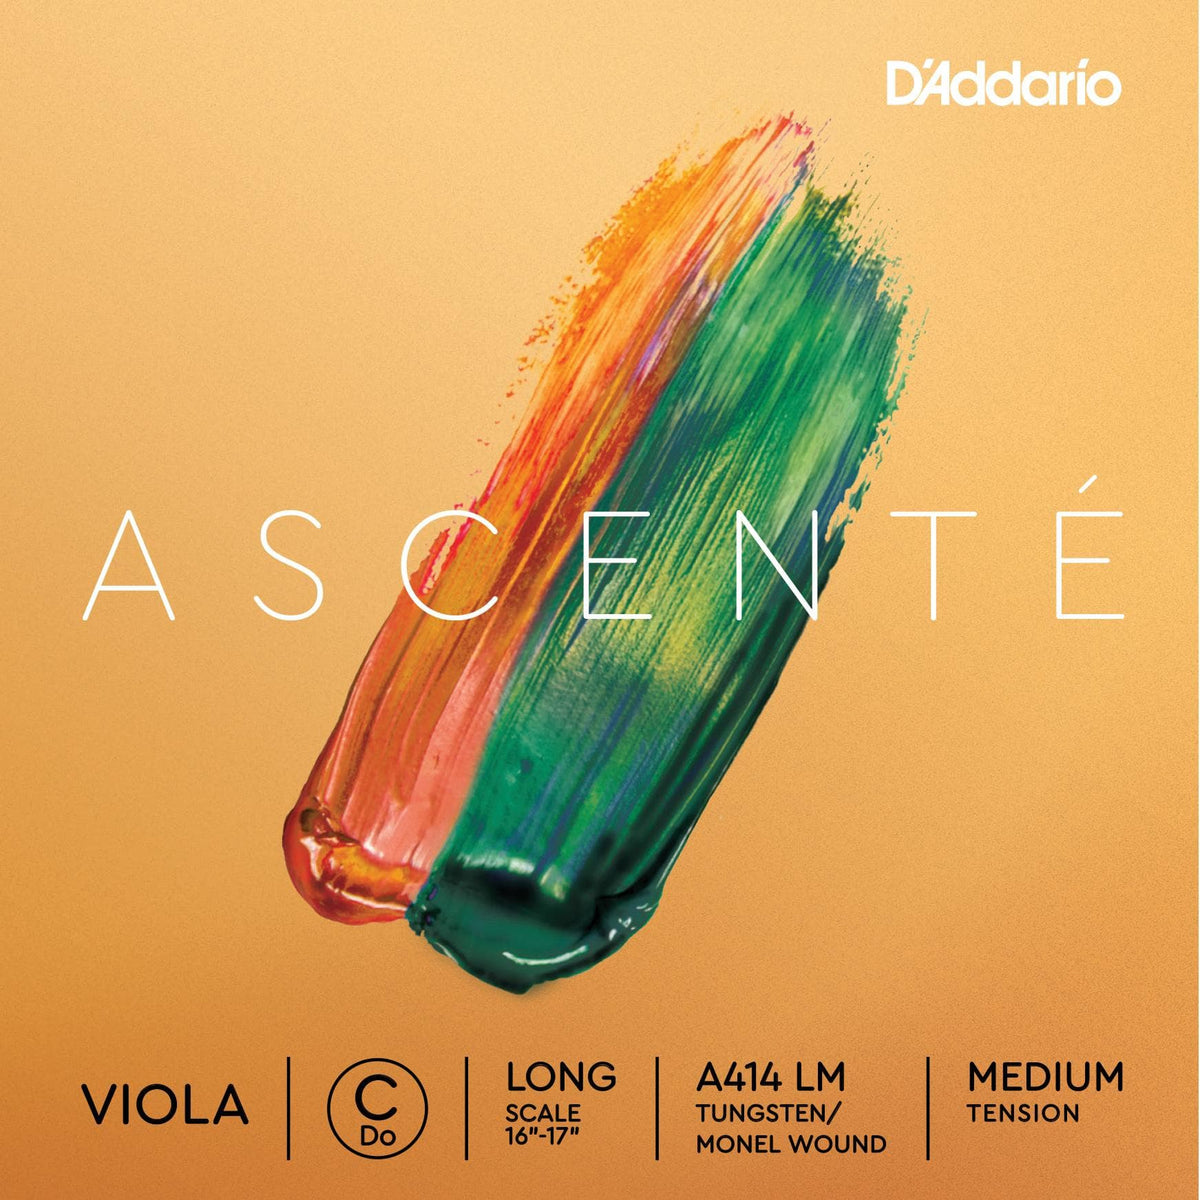 DAddario Ascente Viola C String